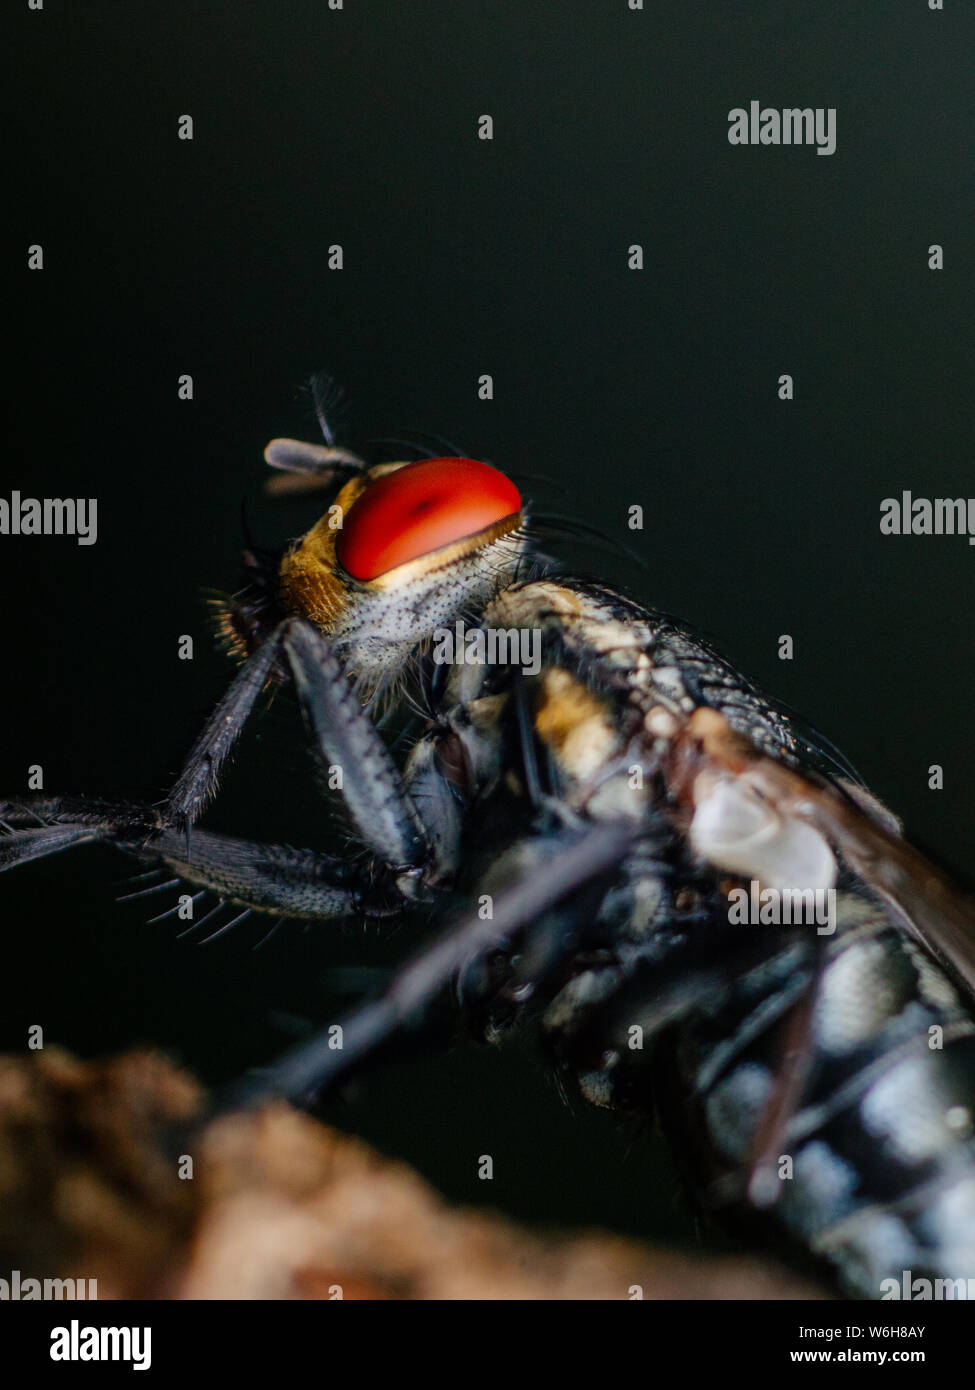 Macro extrême d'un insecte, side view Banque D'Images